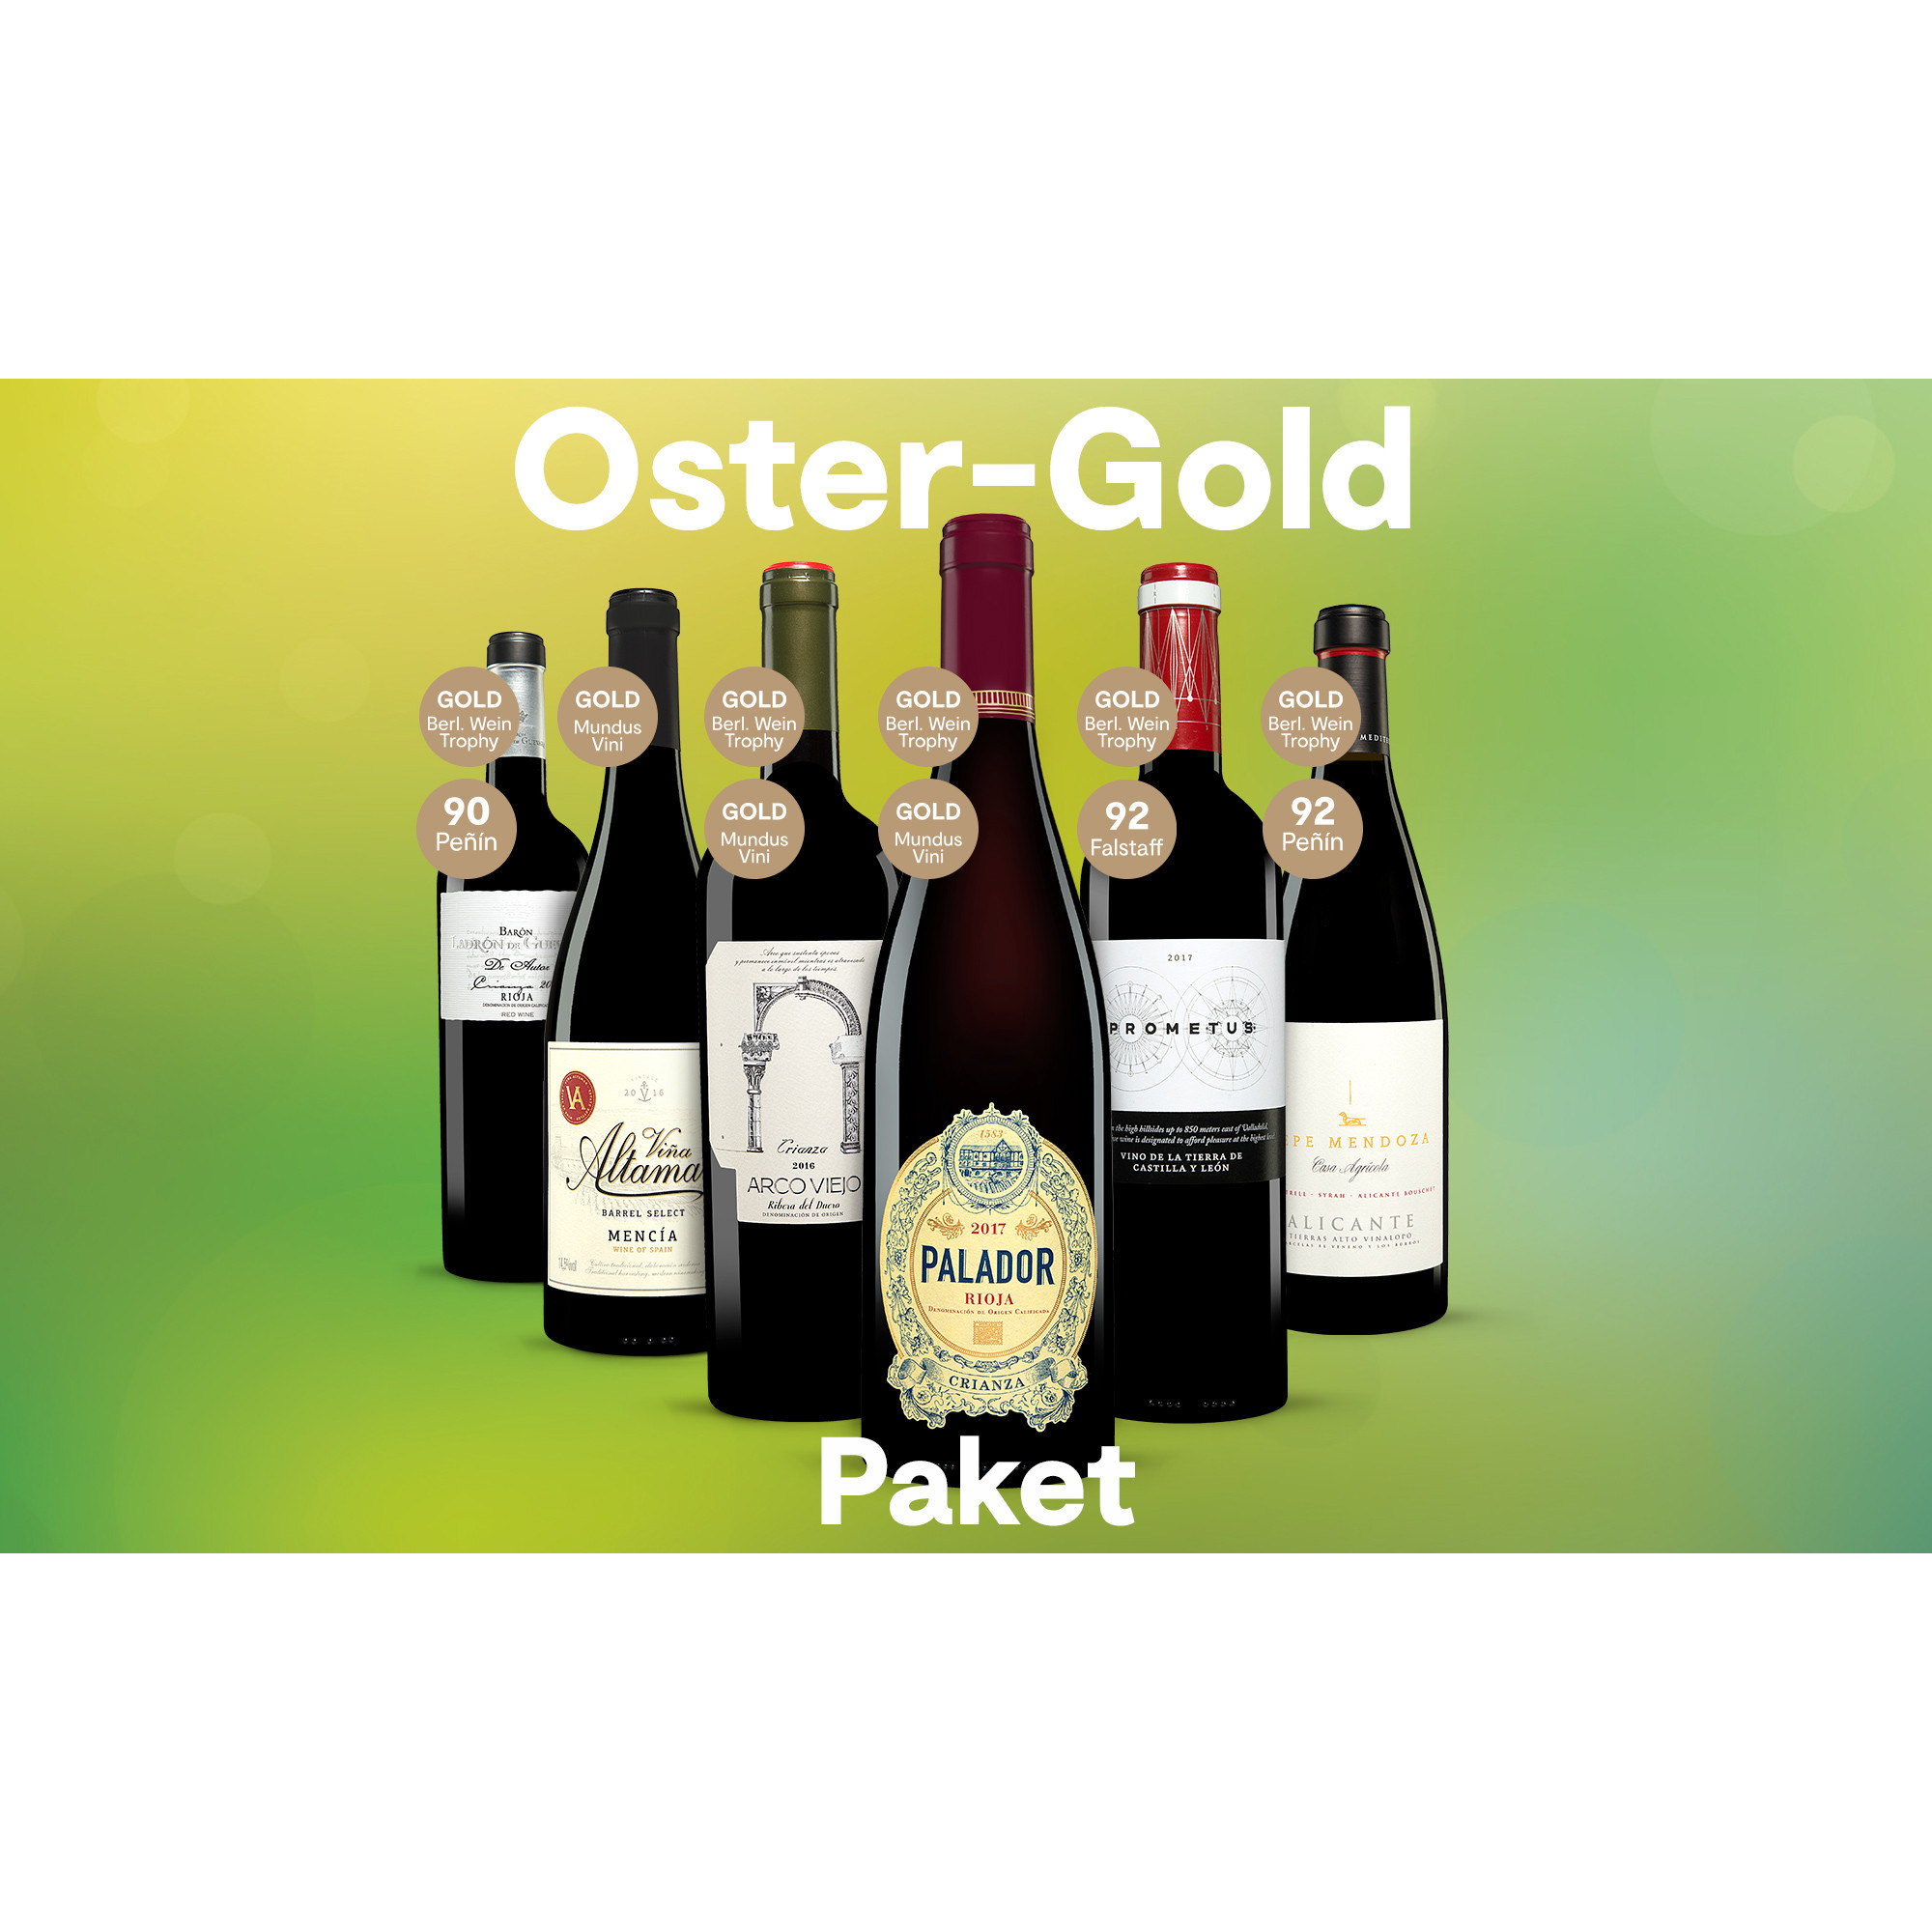 Oster-Gold-Paket 2020  4.5L Weinpaket aus Spanien 29671 vinos DE